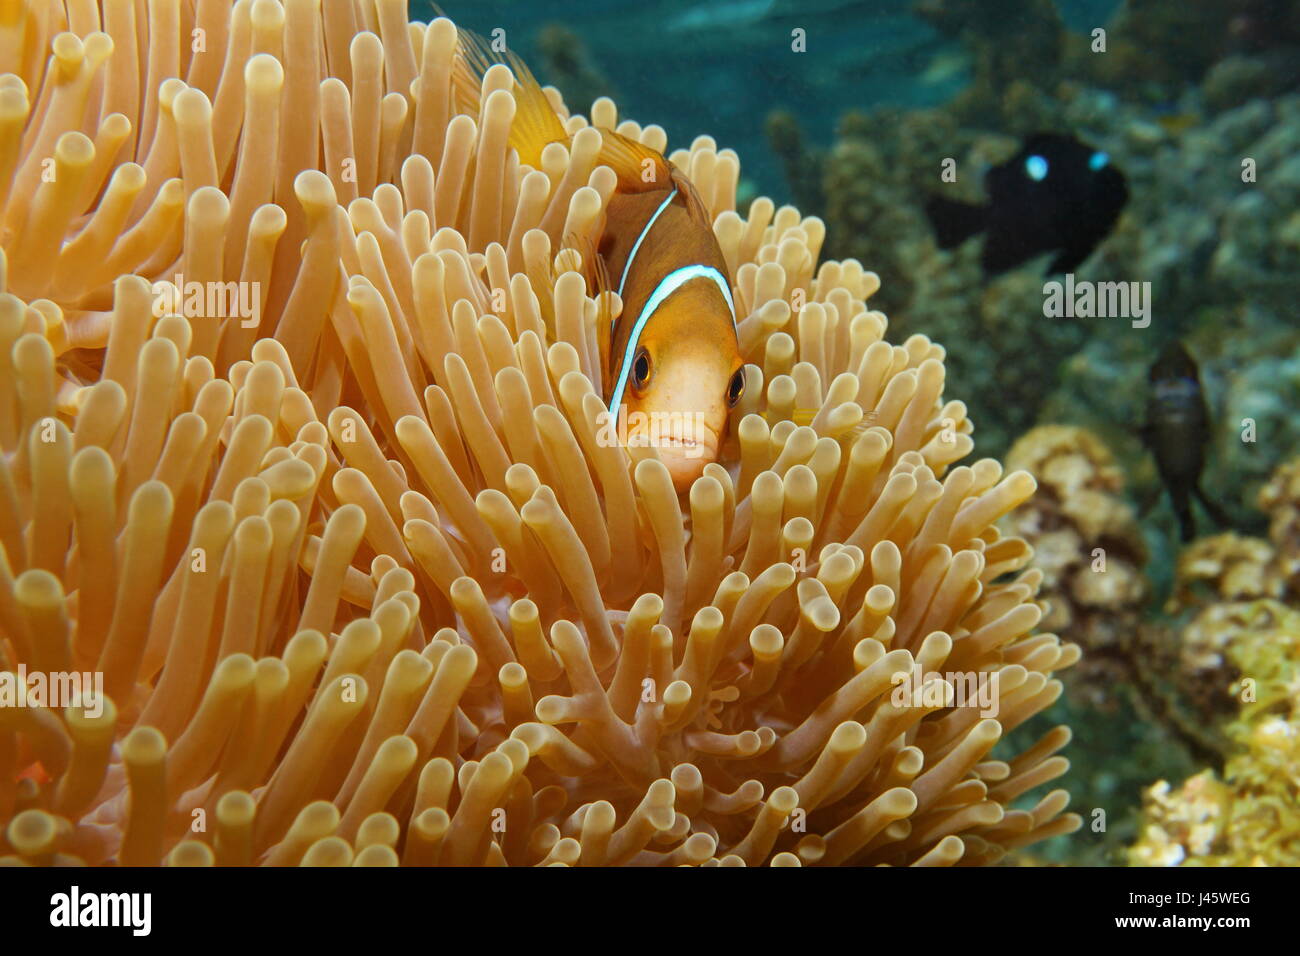 Poissons tropicaux poissons clowns Amphiprion chrysopterus, orange-fin poisson clown, cachés dans les tentacules de l'anémone de mer, océan Pacifique, Bora Bora, Polynésie Française Banque D'Images